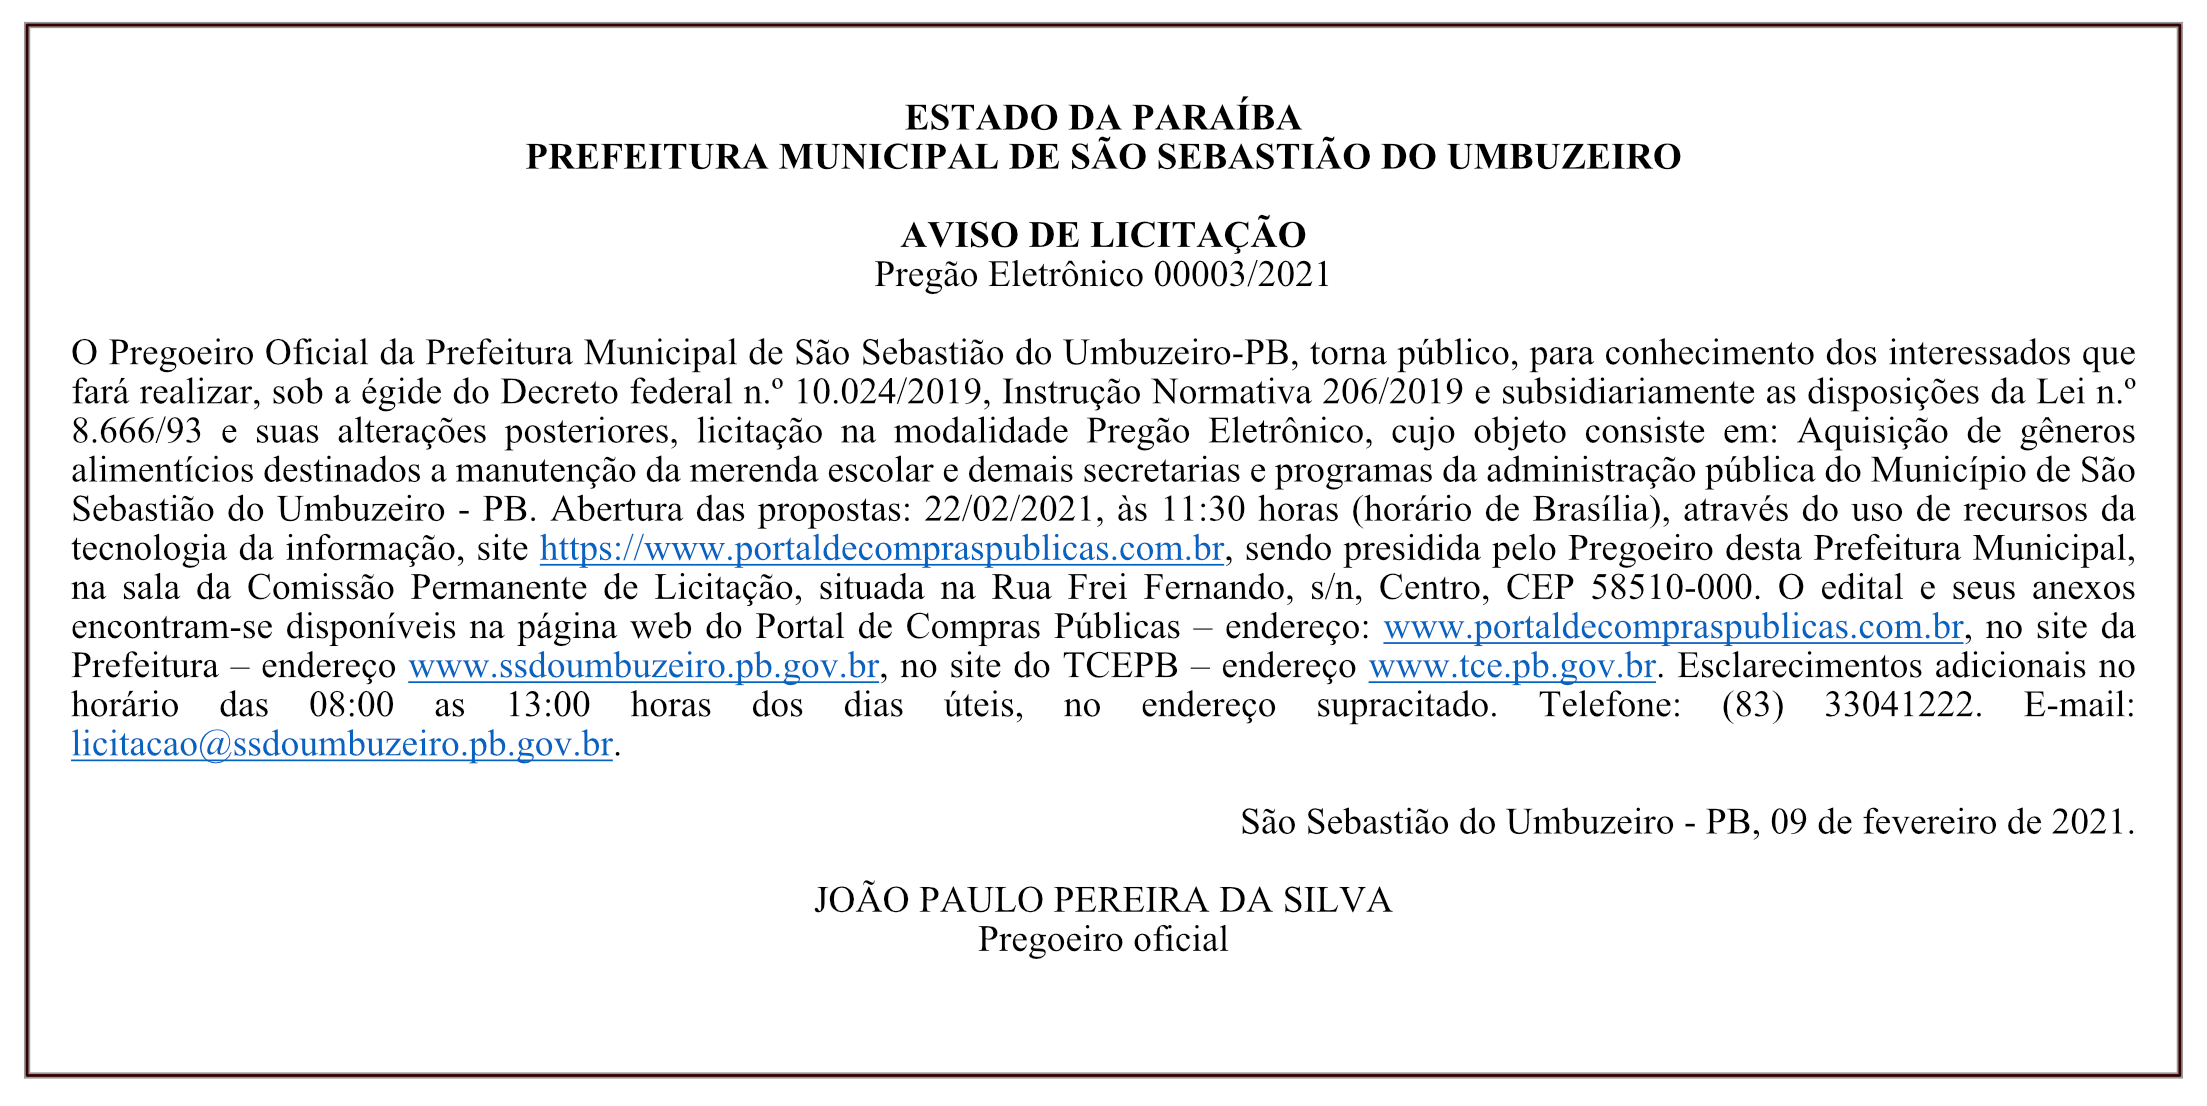 PREFEITURA MUNICIPAL DE SÃO SEBASTIÃO DO UMBUZEIRO – AVISO DE LICITAÇÃO – PREGÃO ELETRÔNICO 00003/2021